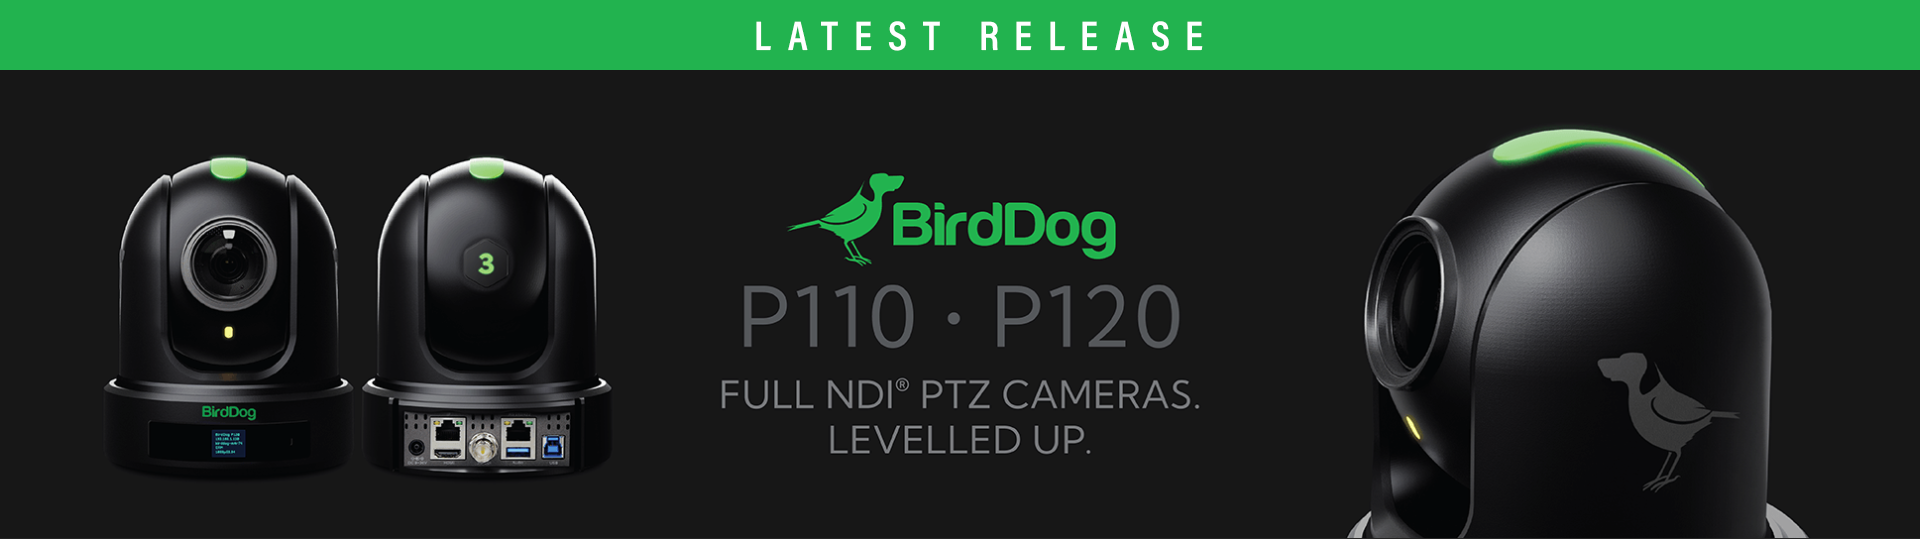 BirdDog P110 & P120